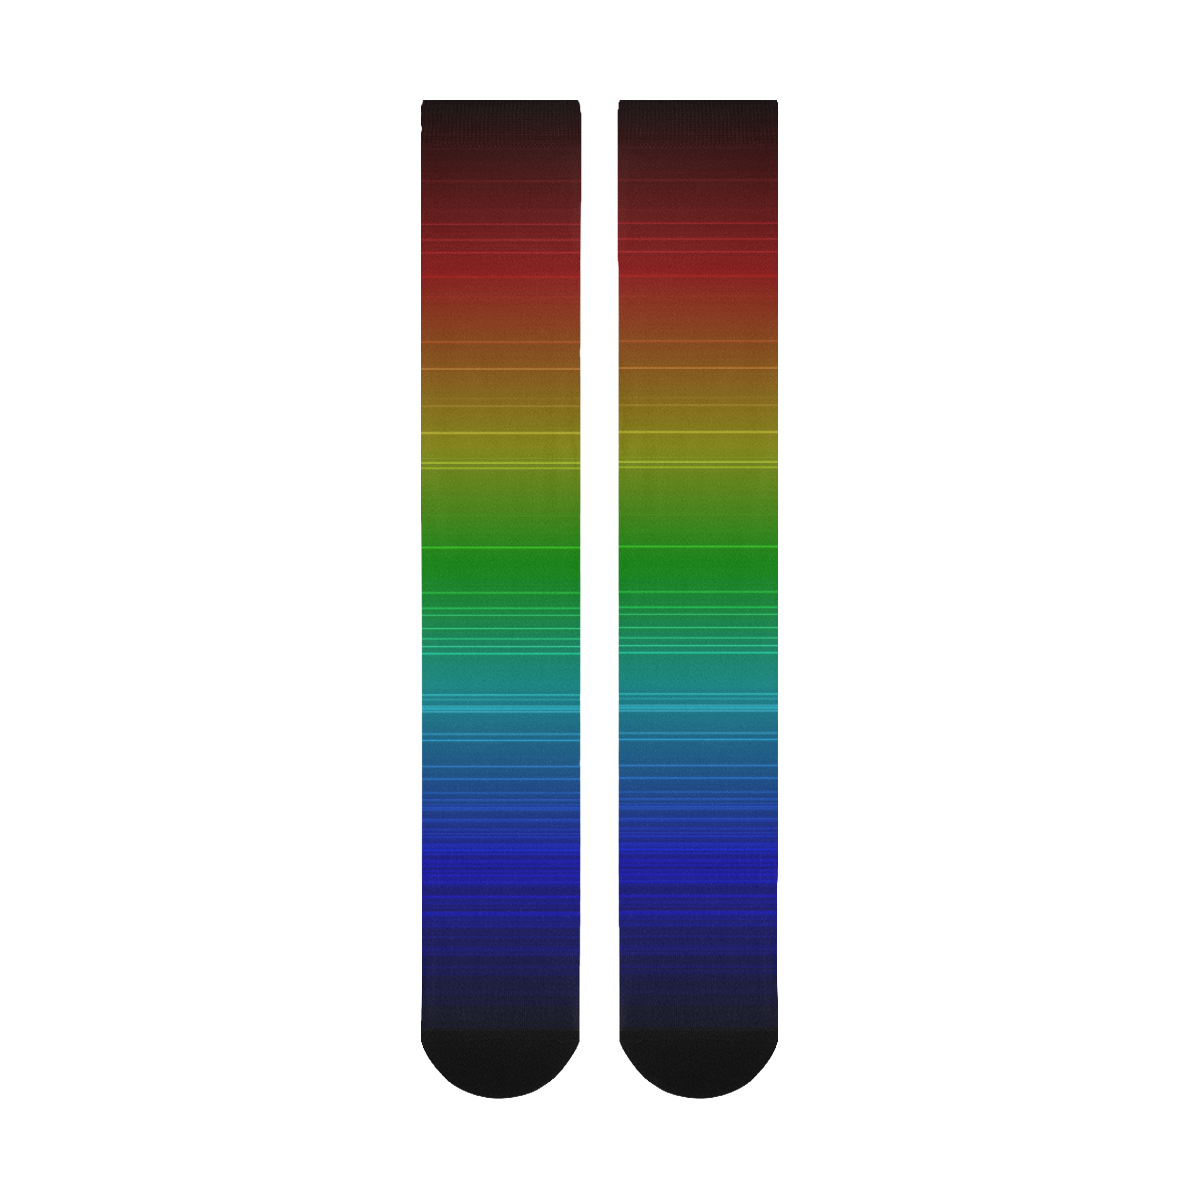 Dark Rainbow Stripes Over-The-Calf Socks